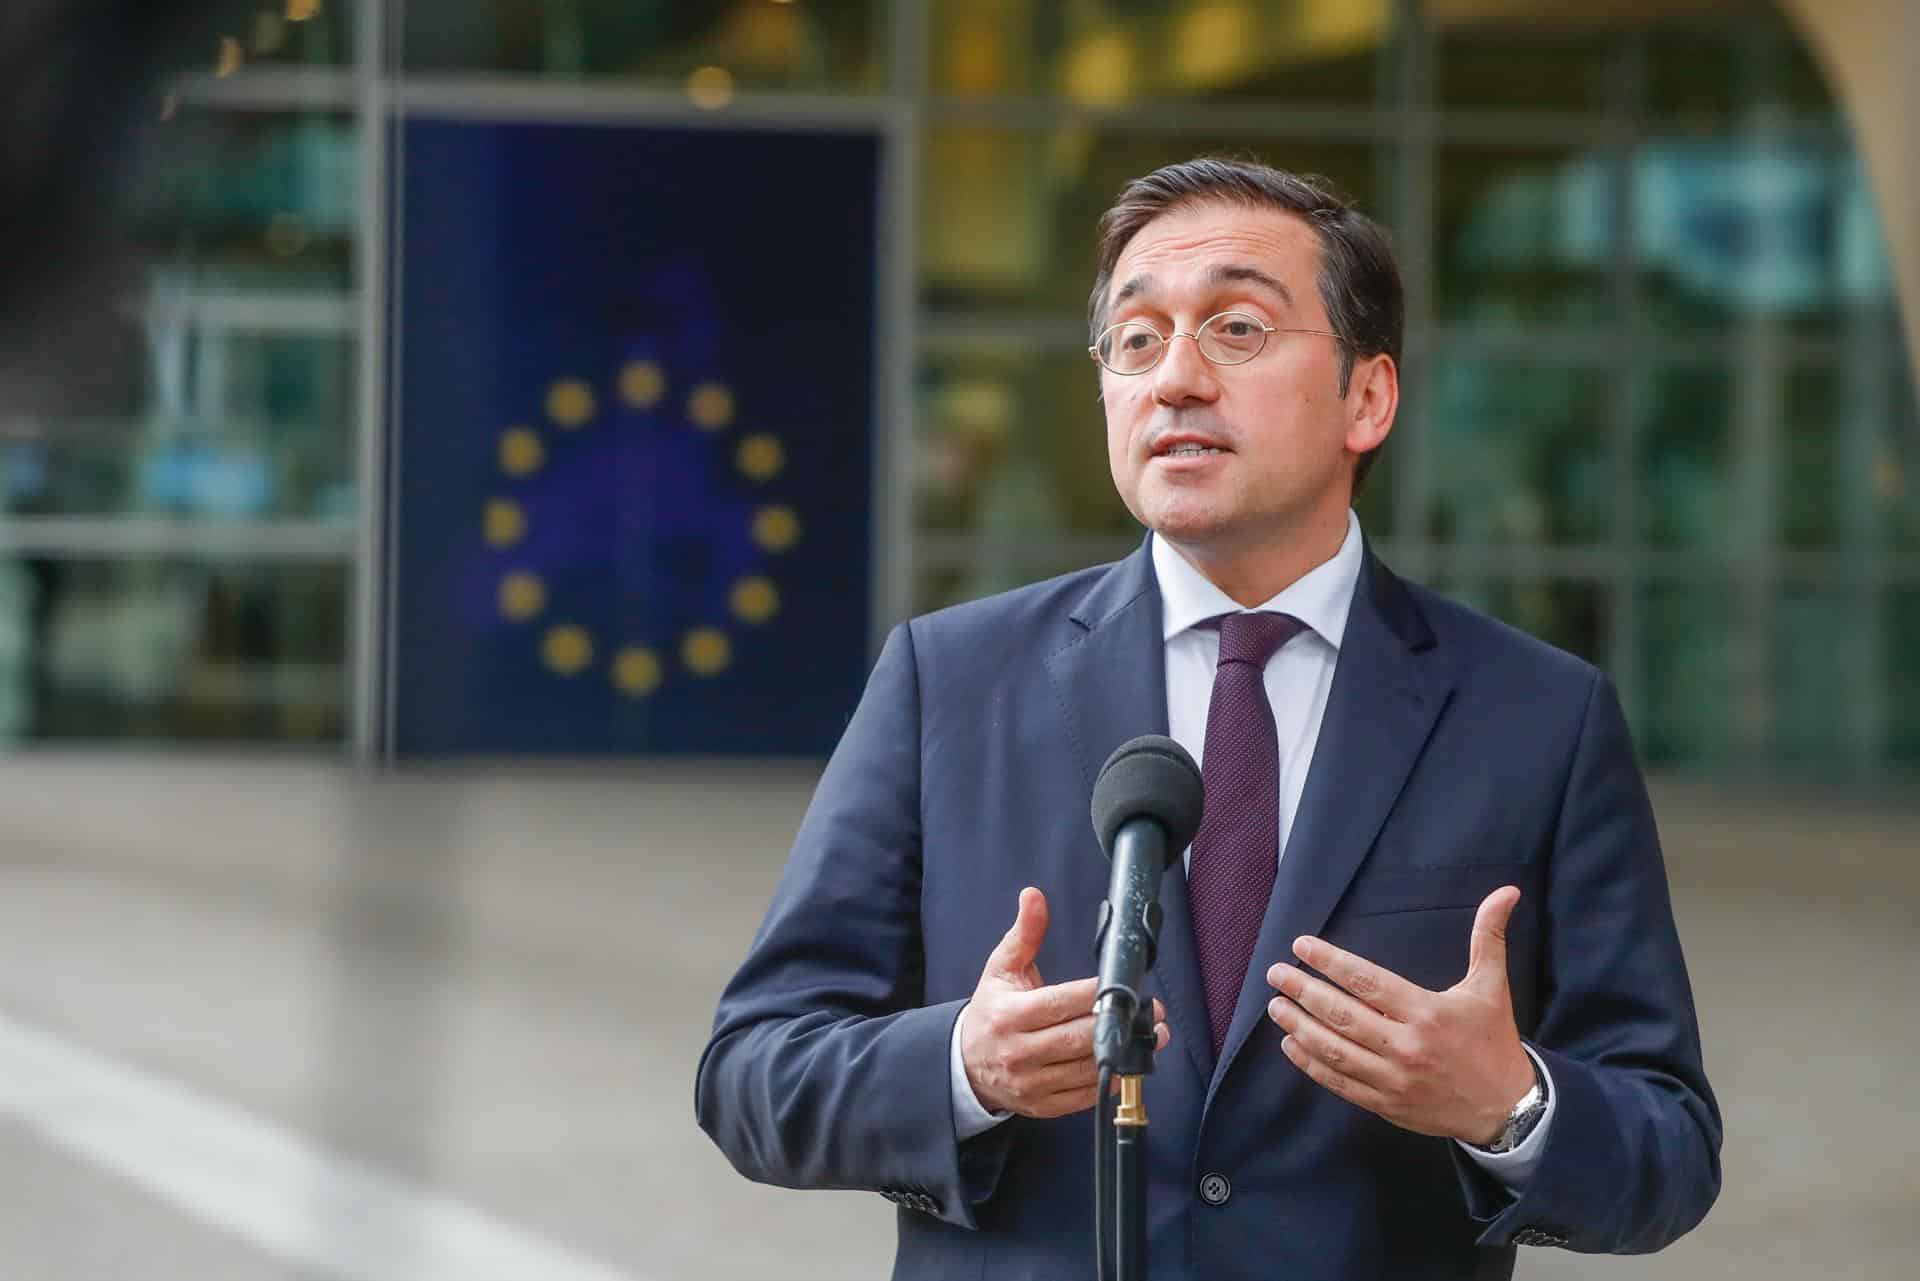 El ministro de Exteriores, José Manuel Albares, tras reunirse con la Comisión Europea en Bruselas